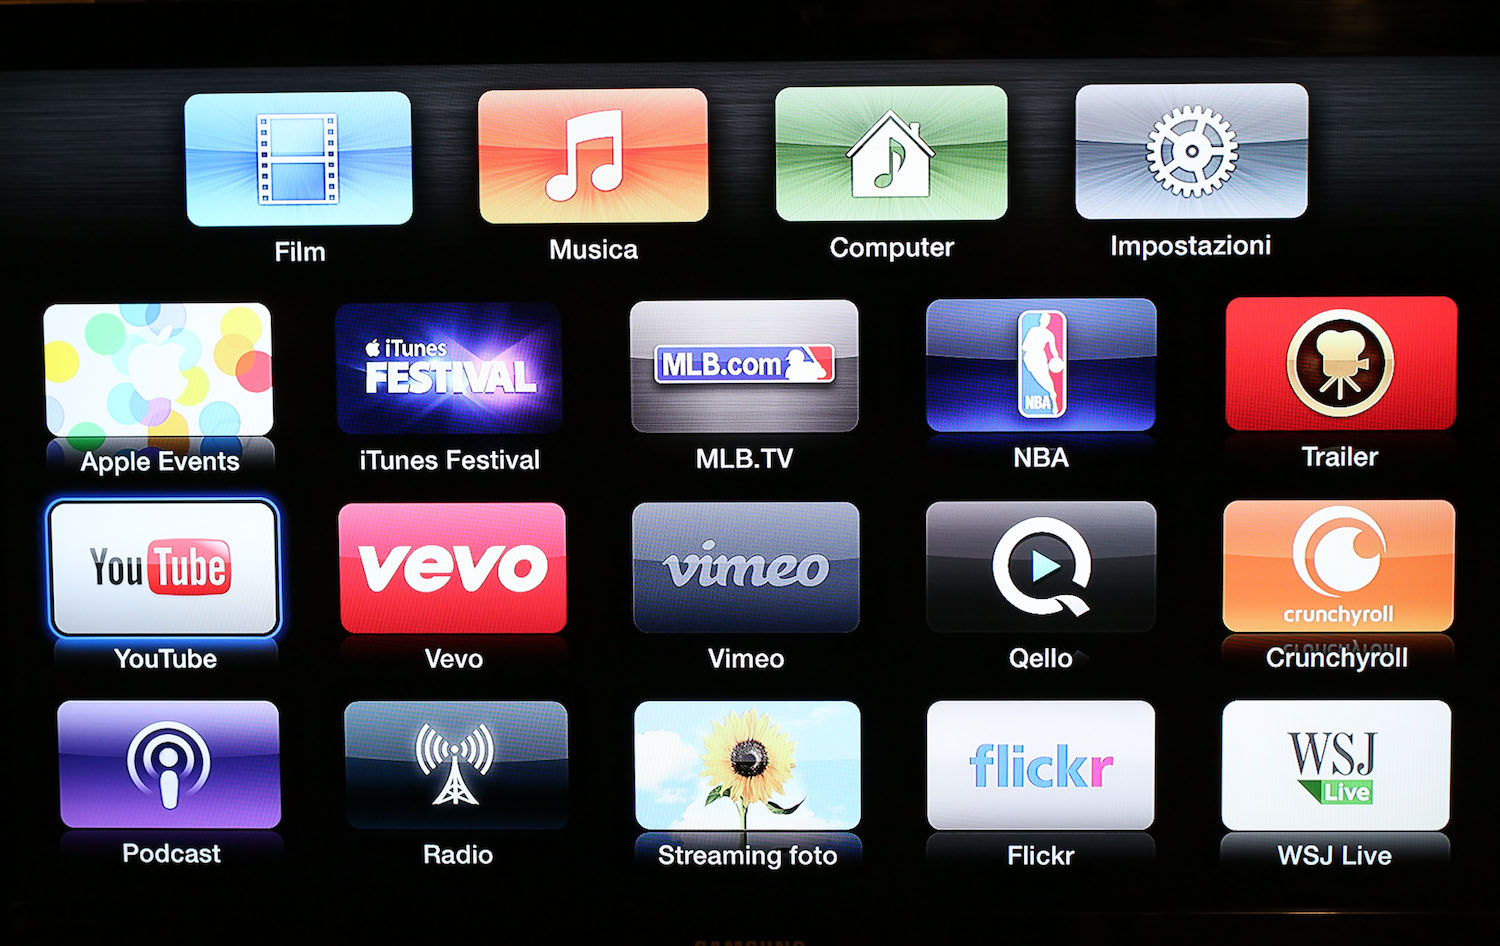 Alcune delle "applicazioni" disponibili sul modello attuale di Apple TV